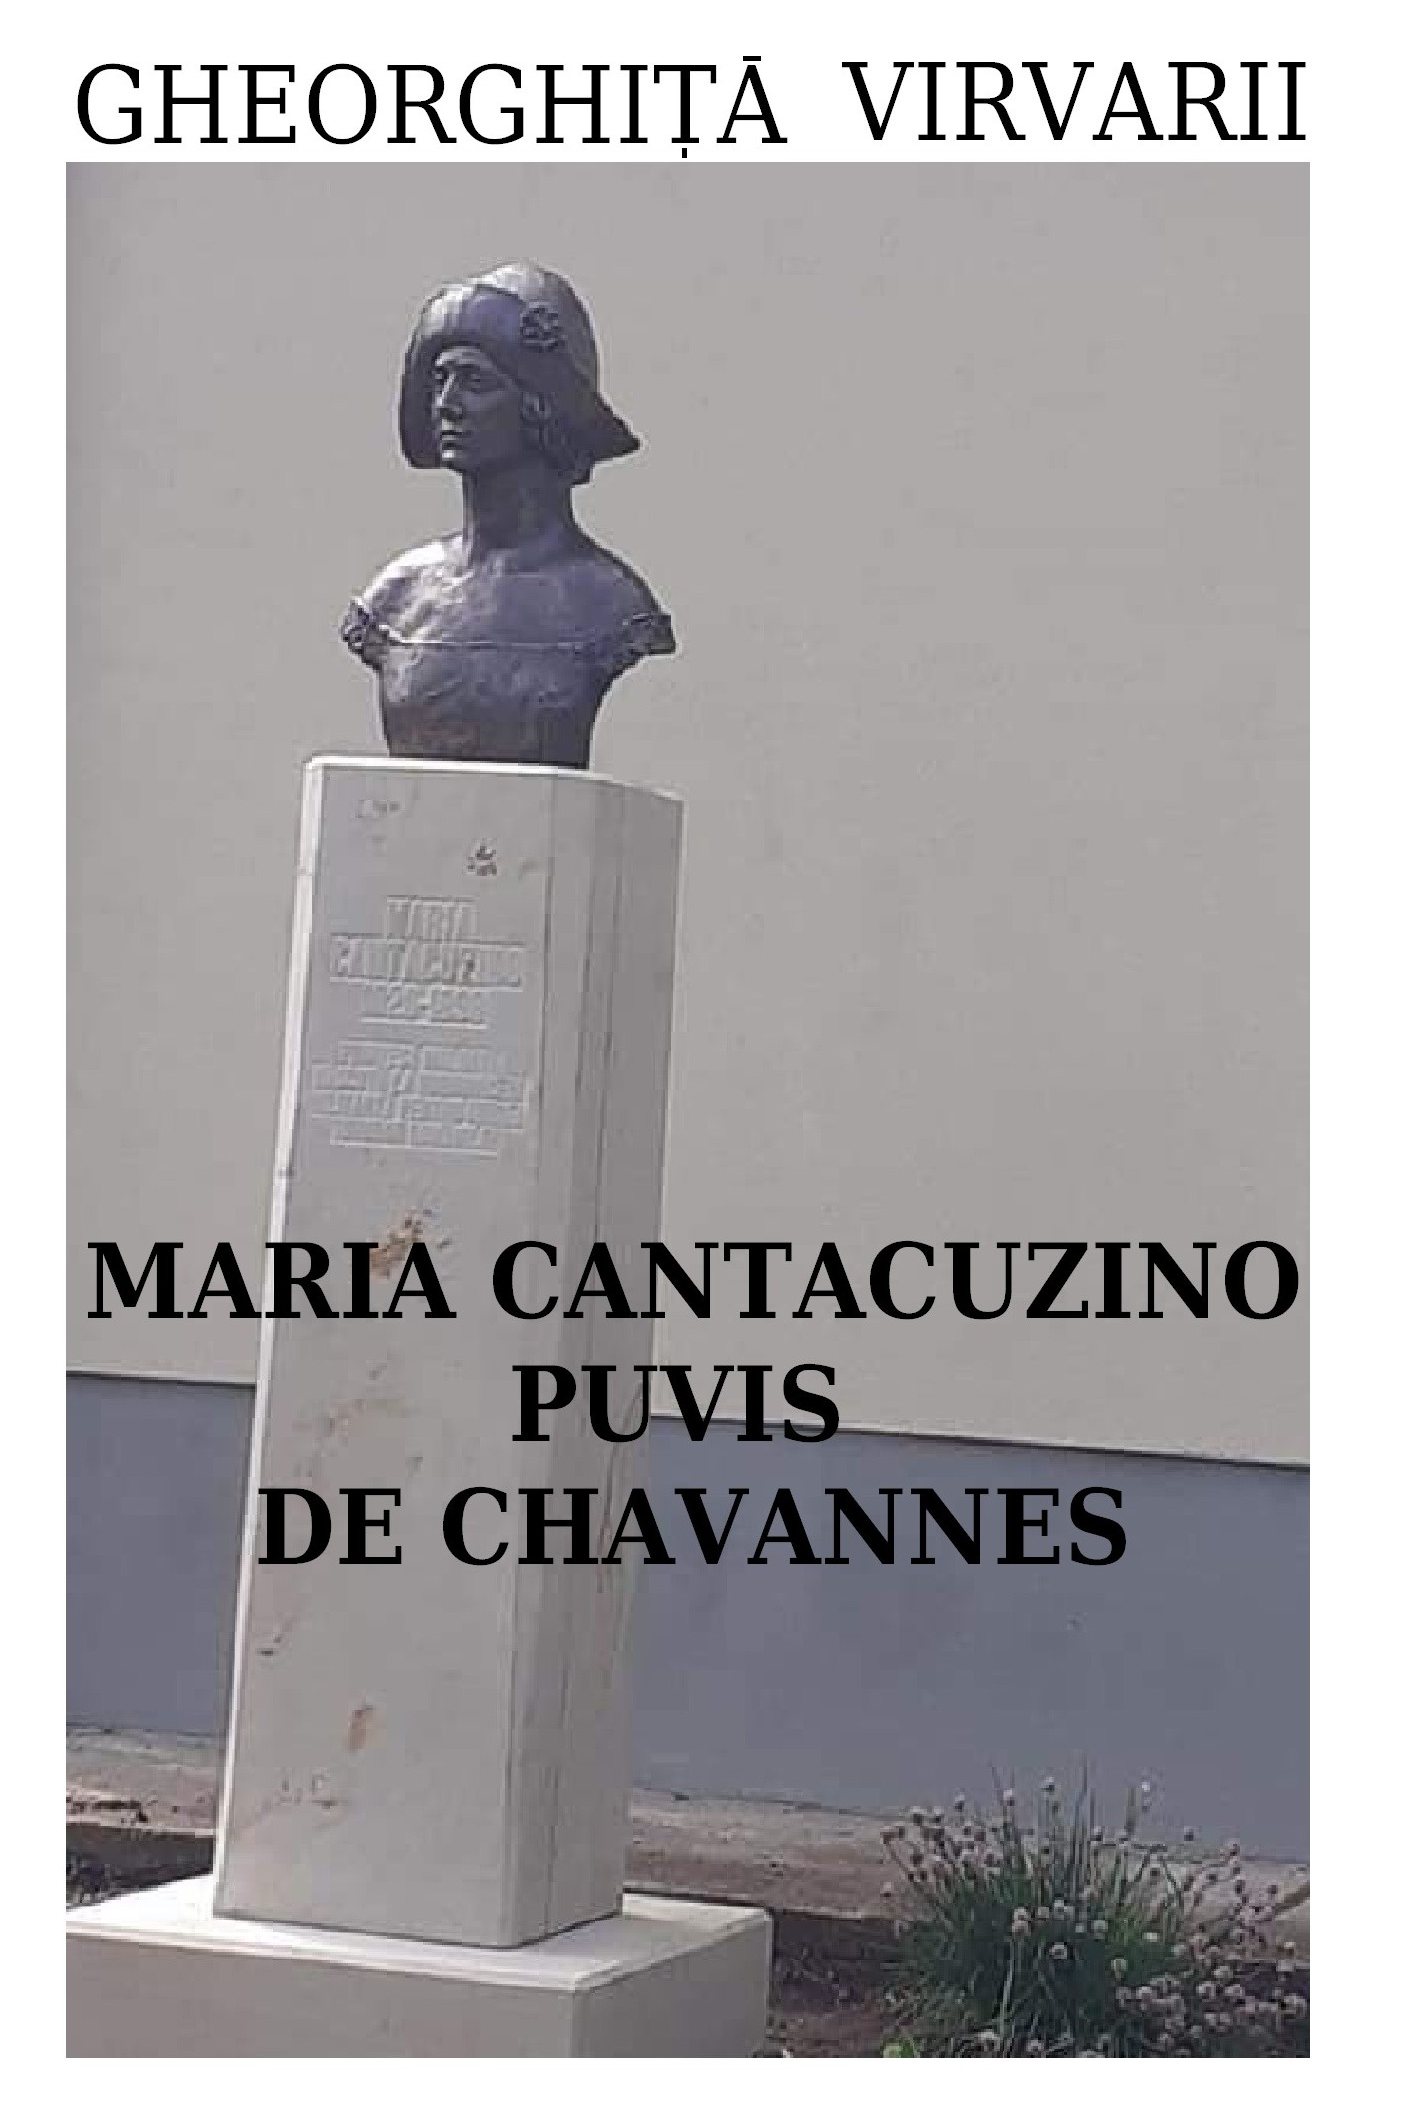 MARIA CANTACUZINO PUVIS DE CHAVANNES